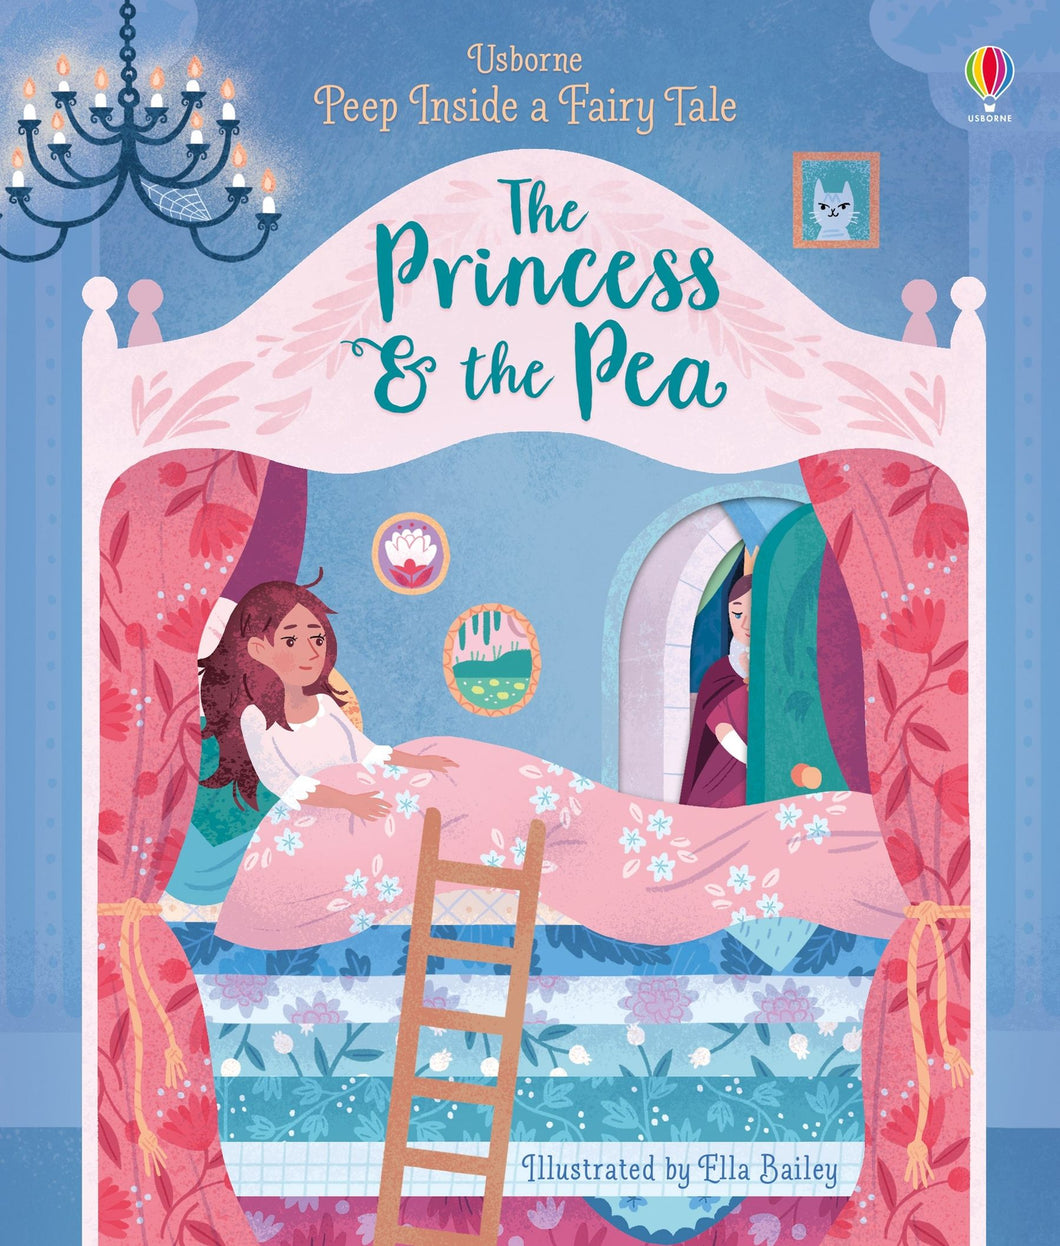 Peep Inside a Fairy Tale: The Princess and the Pea